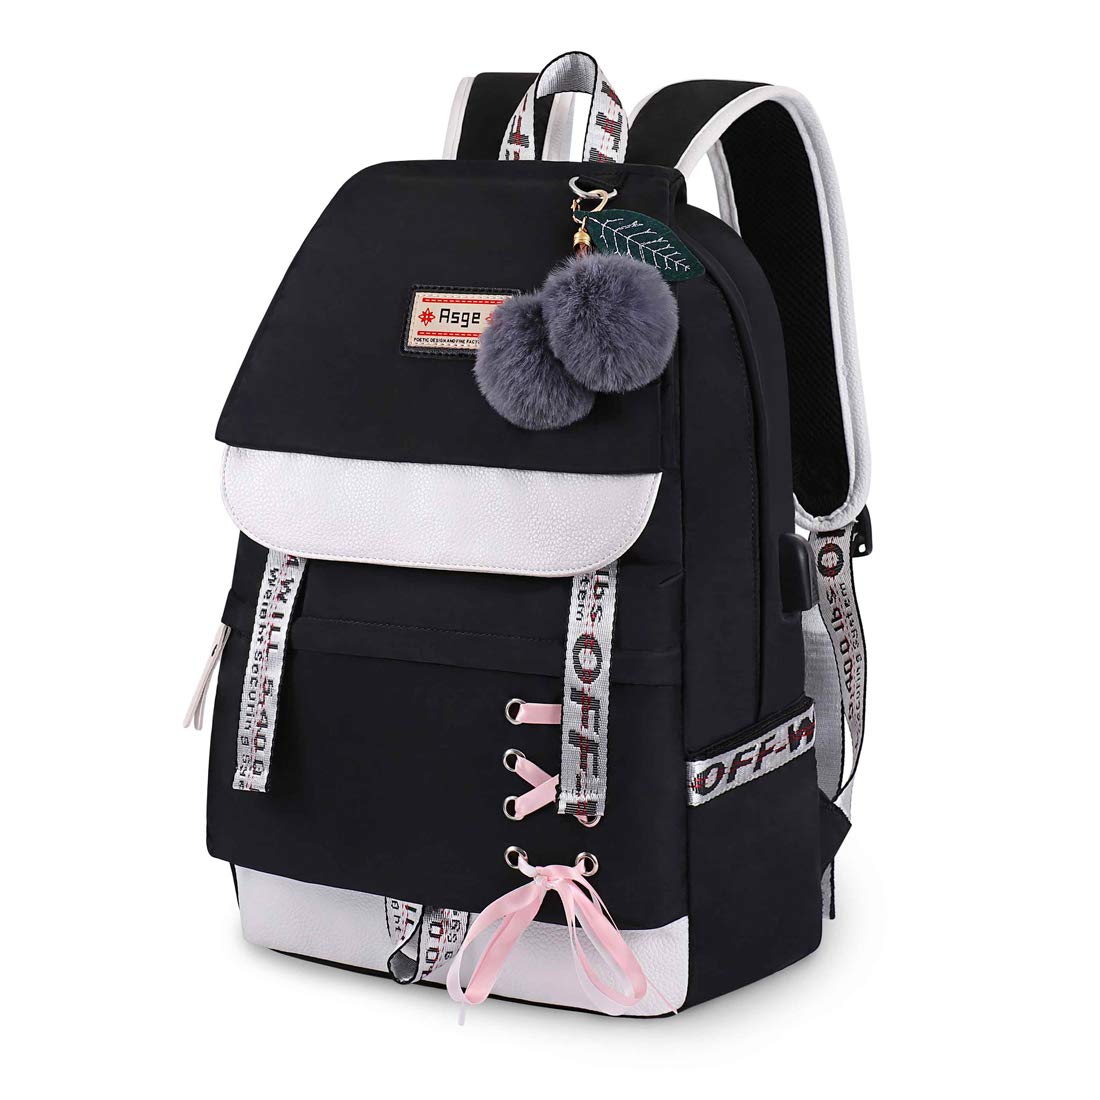 Rucksack Junge Mädchen Schulranzen Uni Reise Laptop Tasche Backpack Gepolstert 